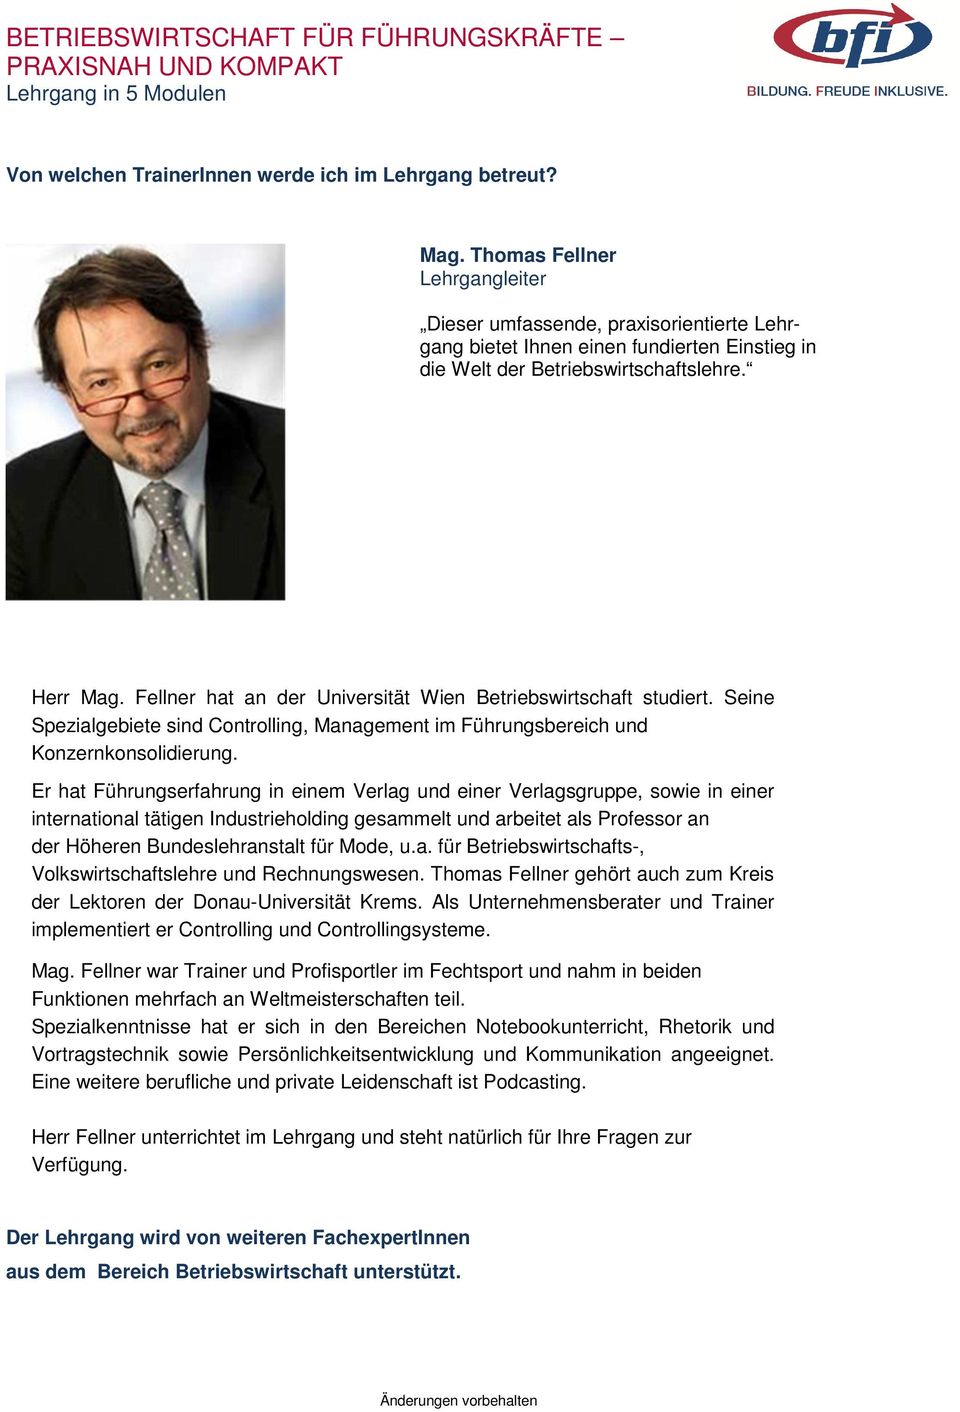 Fellner hat an der Universität Wien Betriebswirtschaft studiert. Seine Spezialgebiete sind Controlling, Management im Führungsbereich und Konzernkonsolidierung.